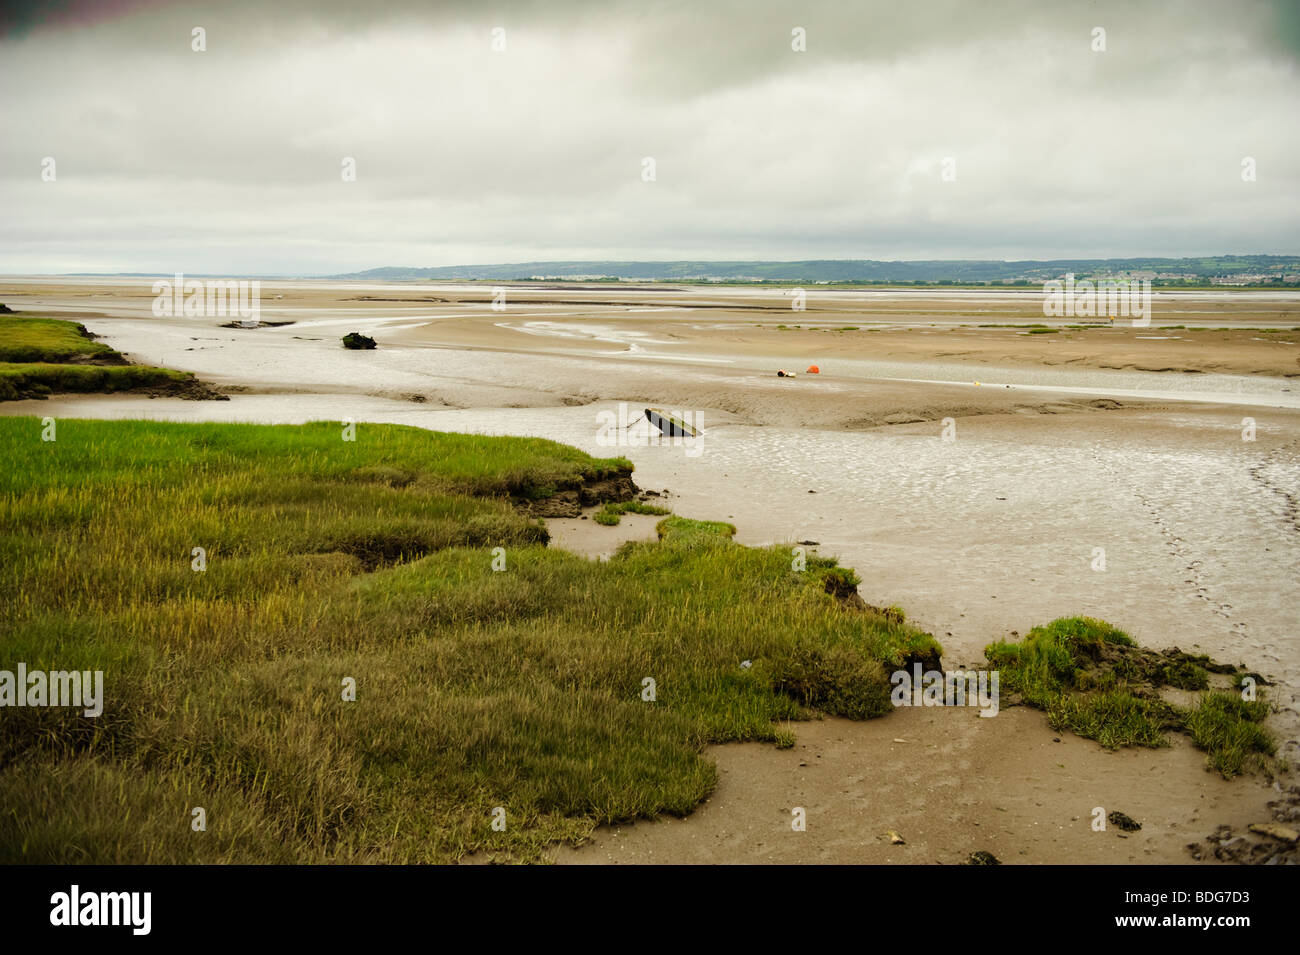 Marée basse exposant les vasières de l'exploitation des sables bitumineux sur la Loughor Llanrhidian estuaire, au sud ouest du pays de Galles UK, ciel couvert journée grise Banque D'Images